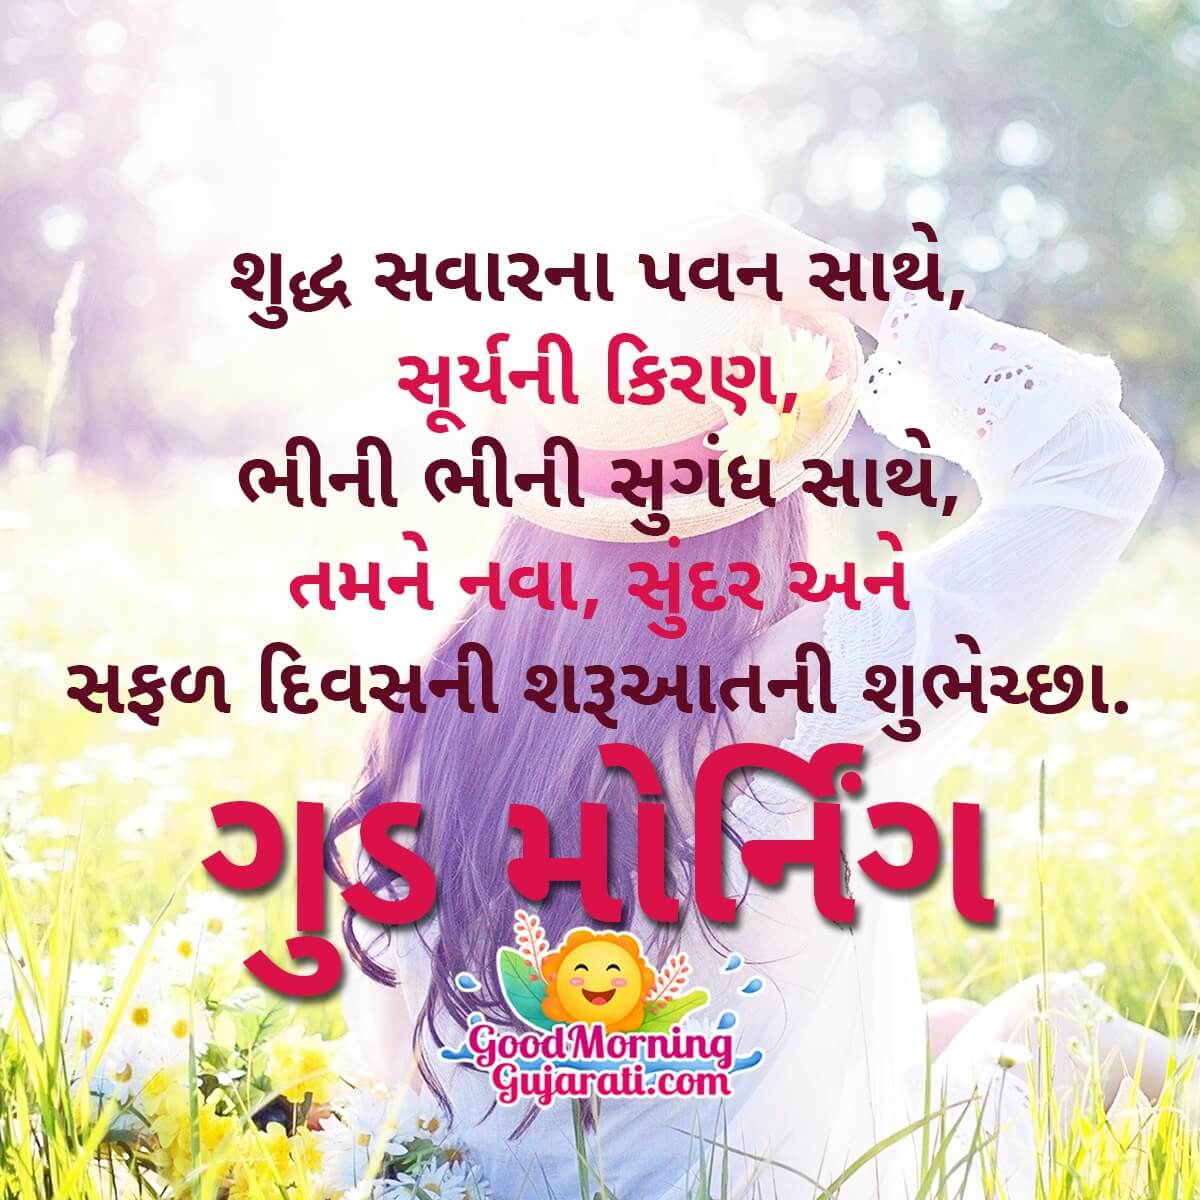 Good Morning Gujarati Shayari - Good Morning Wishes & Images in ...